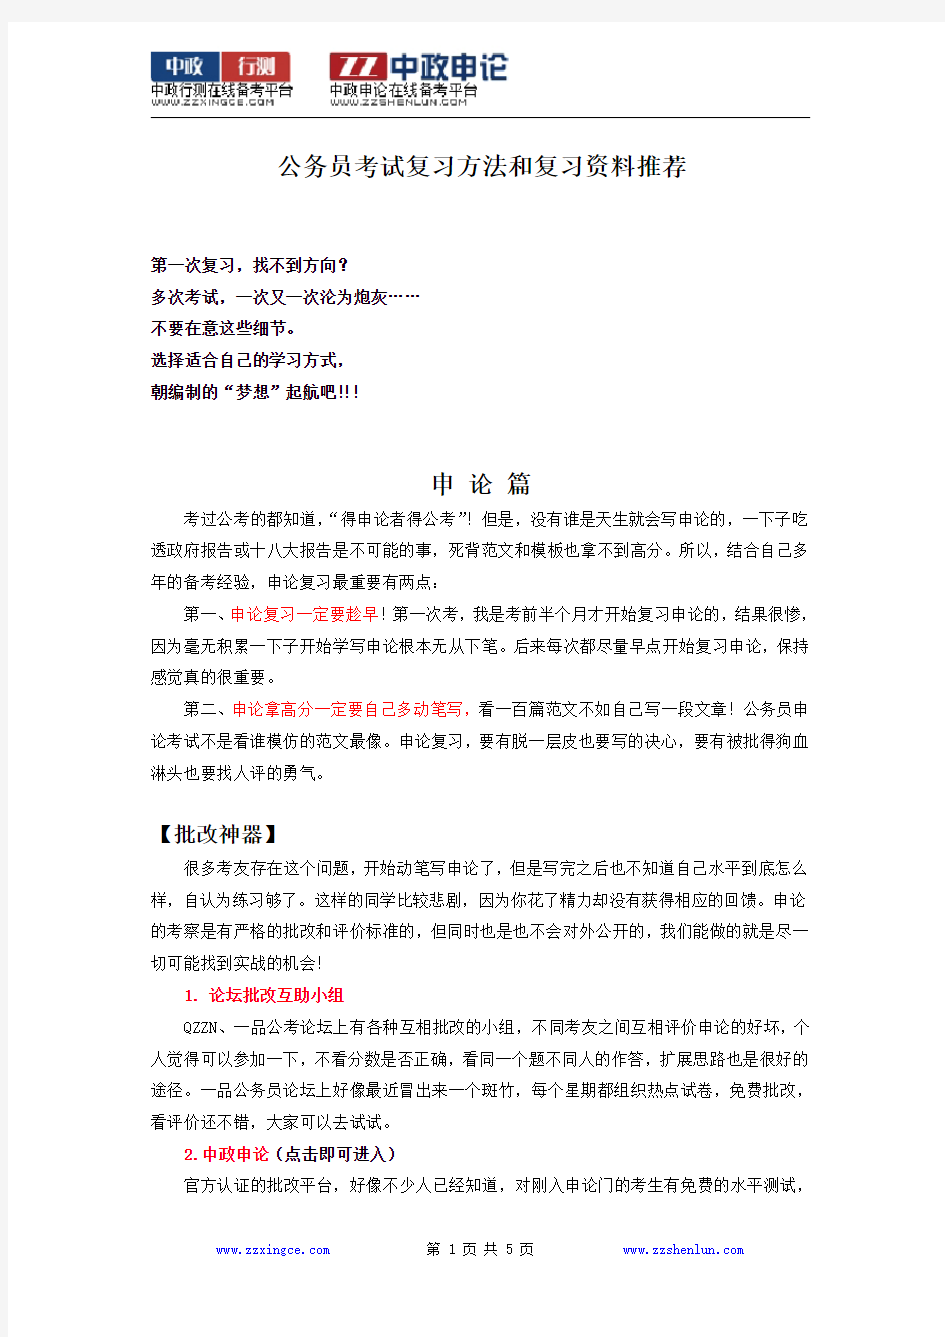 2015年湖北省公务员考试复习方法和复习资料推荐